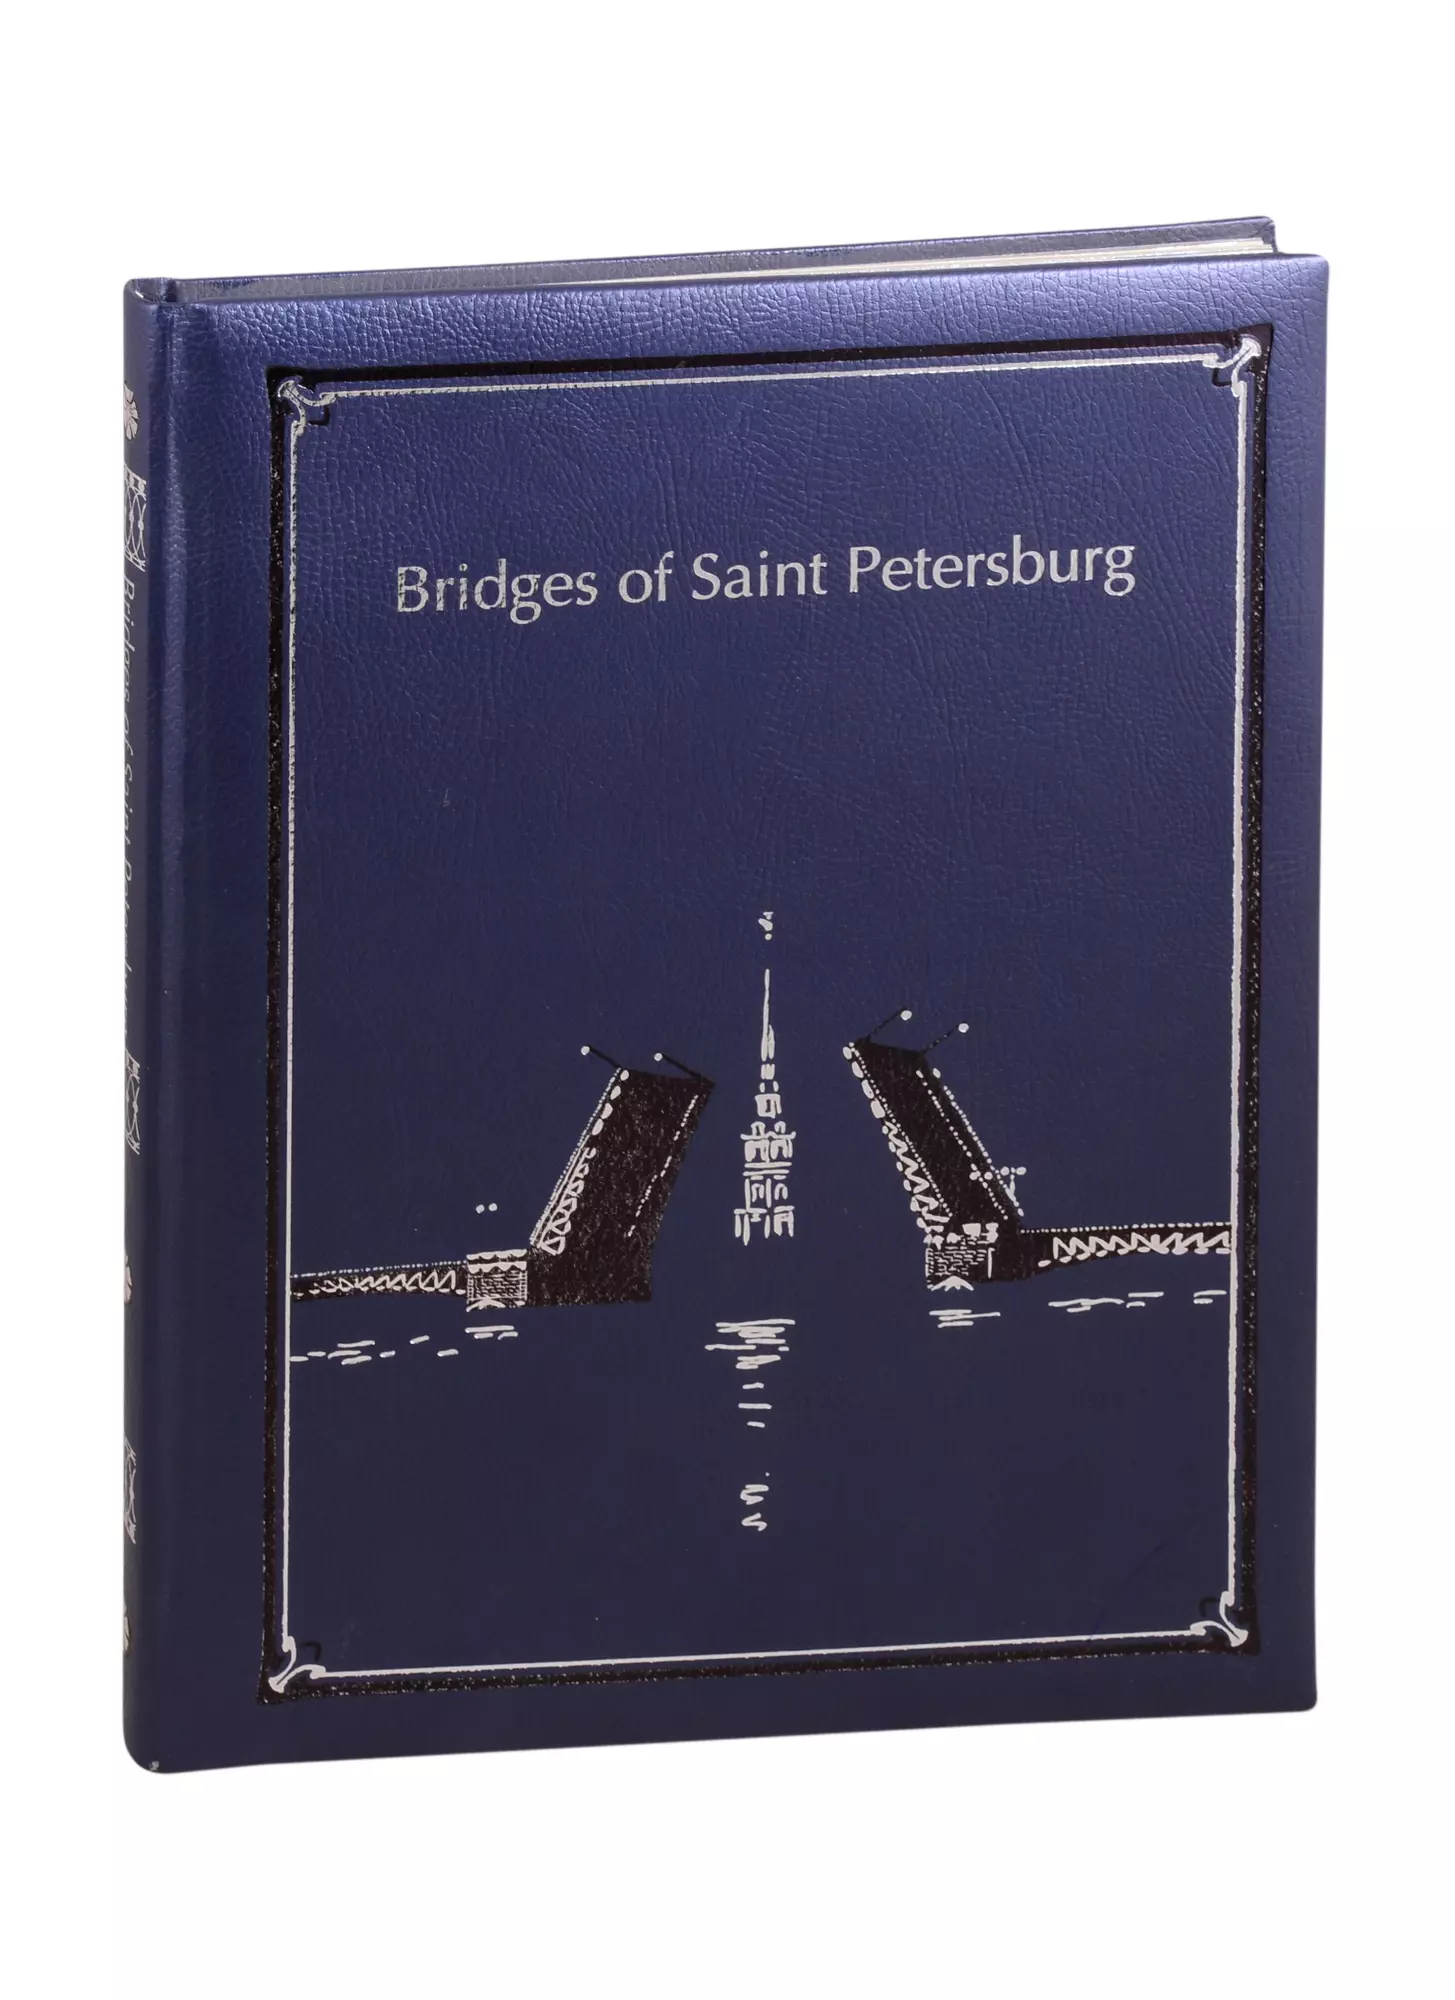 Antonov B. - Bridges of st. Petersburg. Мосты Санкт-Петербурга: Альбом на английском языке